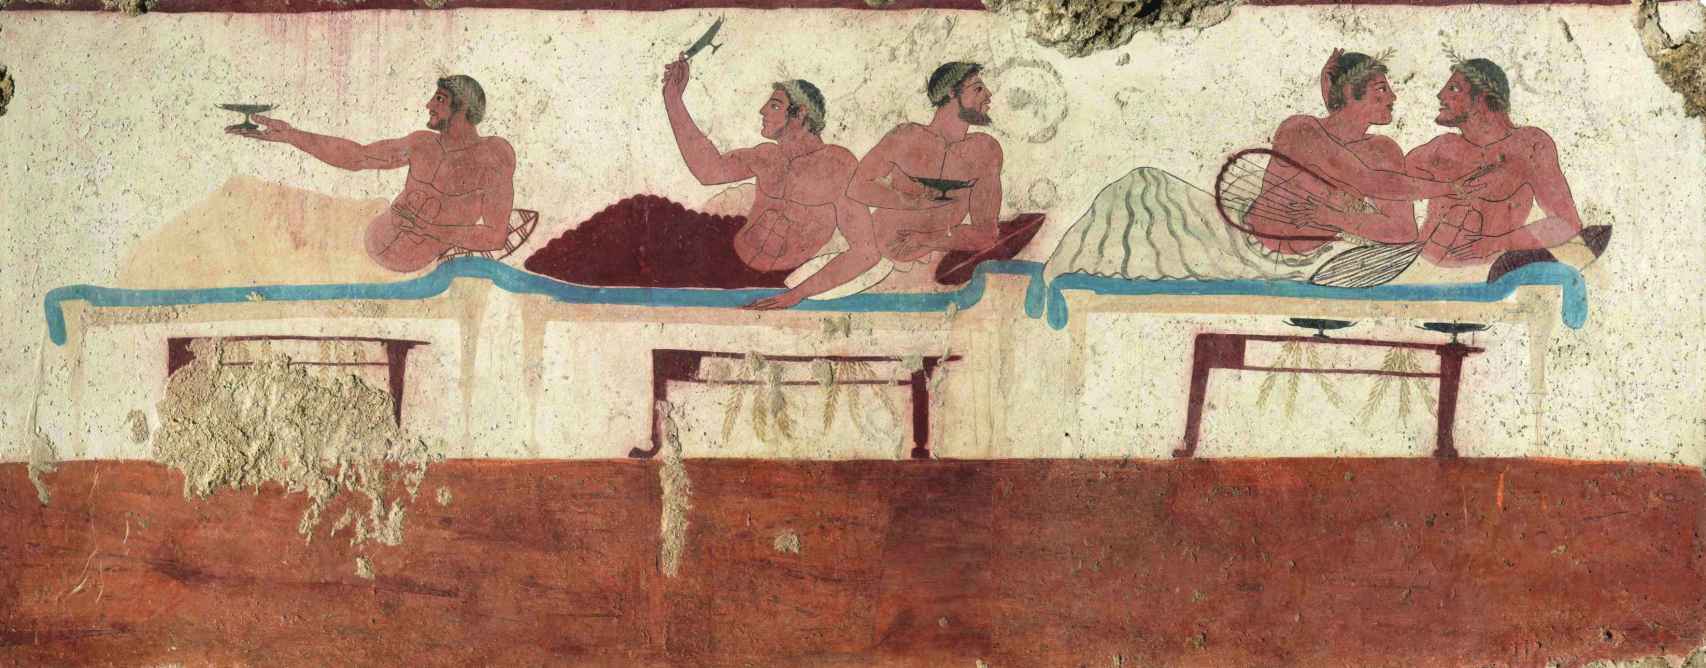 Hombres en el simposio. Tumba del nadador, Paestum. Hacia 480 a. C.